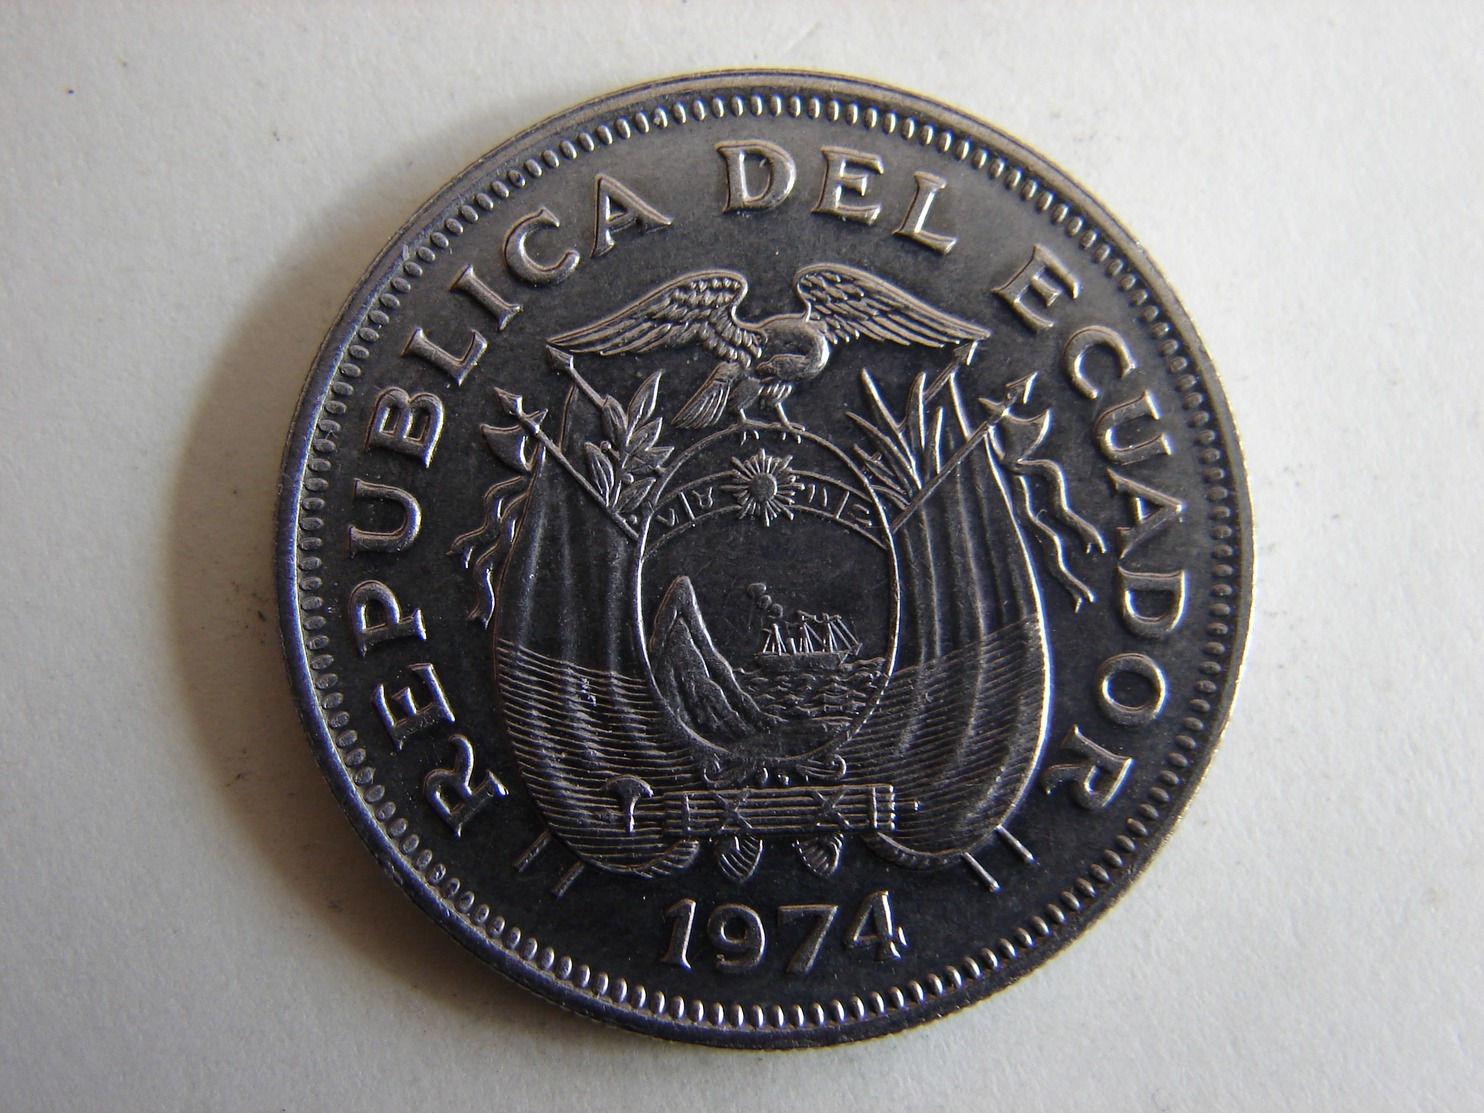 1 SUCRE 1974 - Ecuador